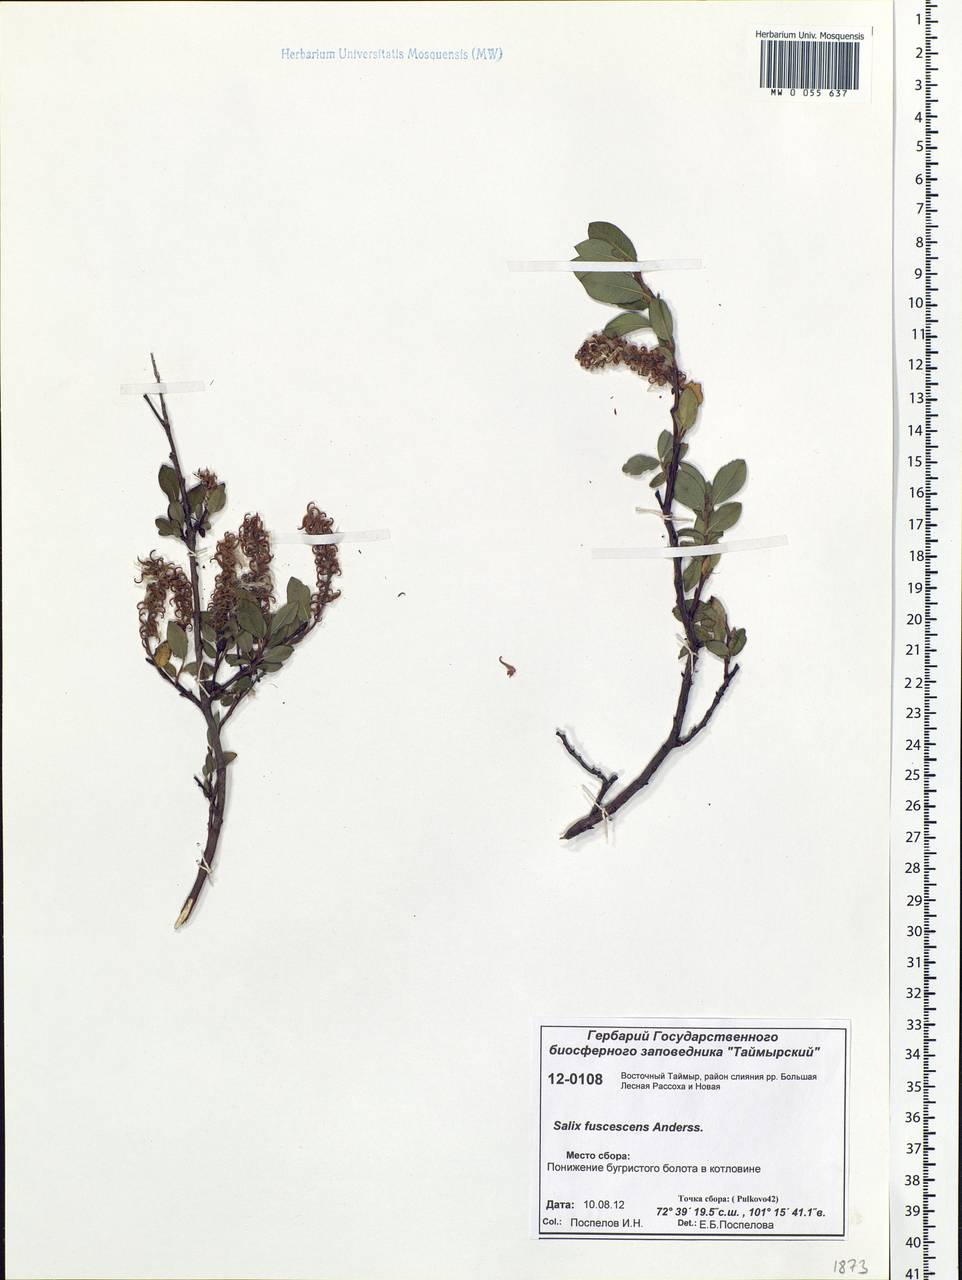 Salix fuscescens Andersson, Siberia, Central Siberia (S3) (Russia)